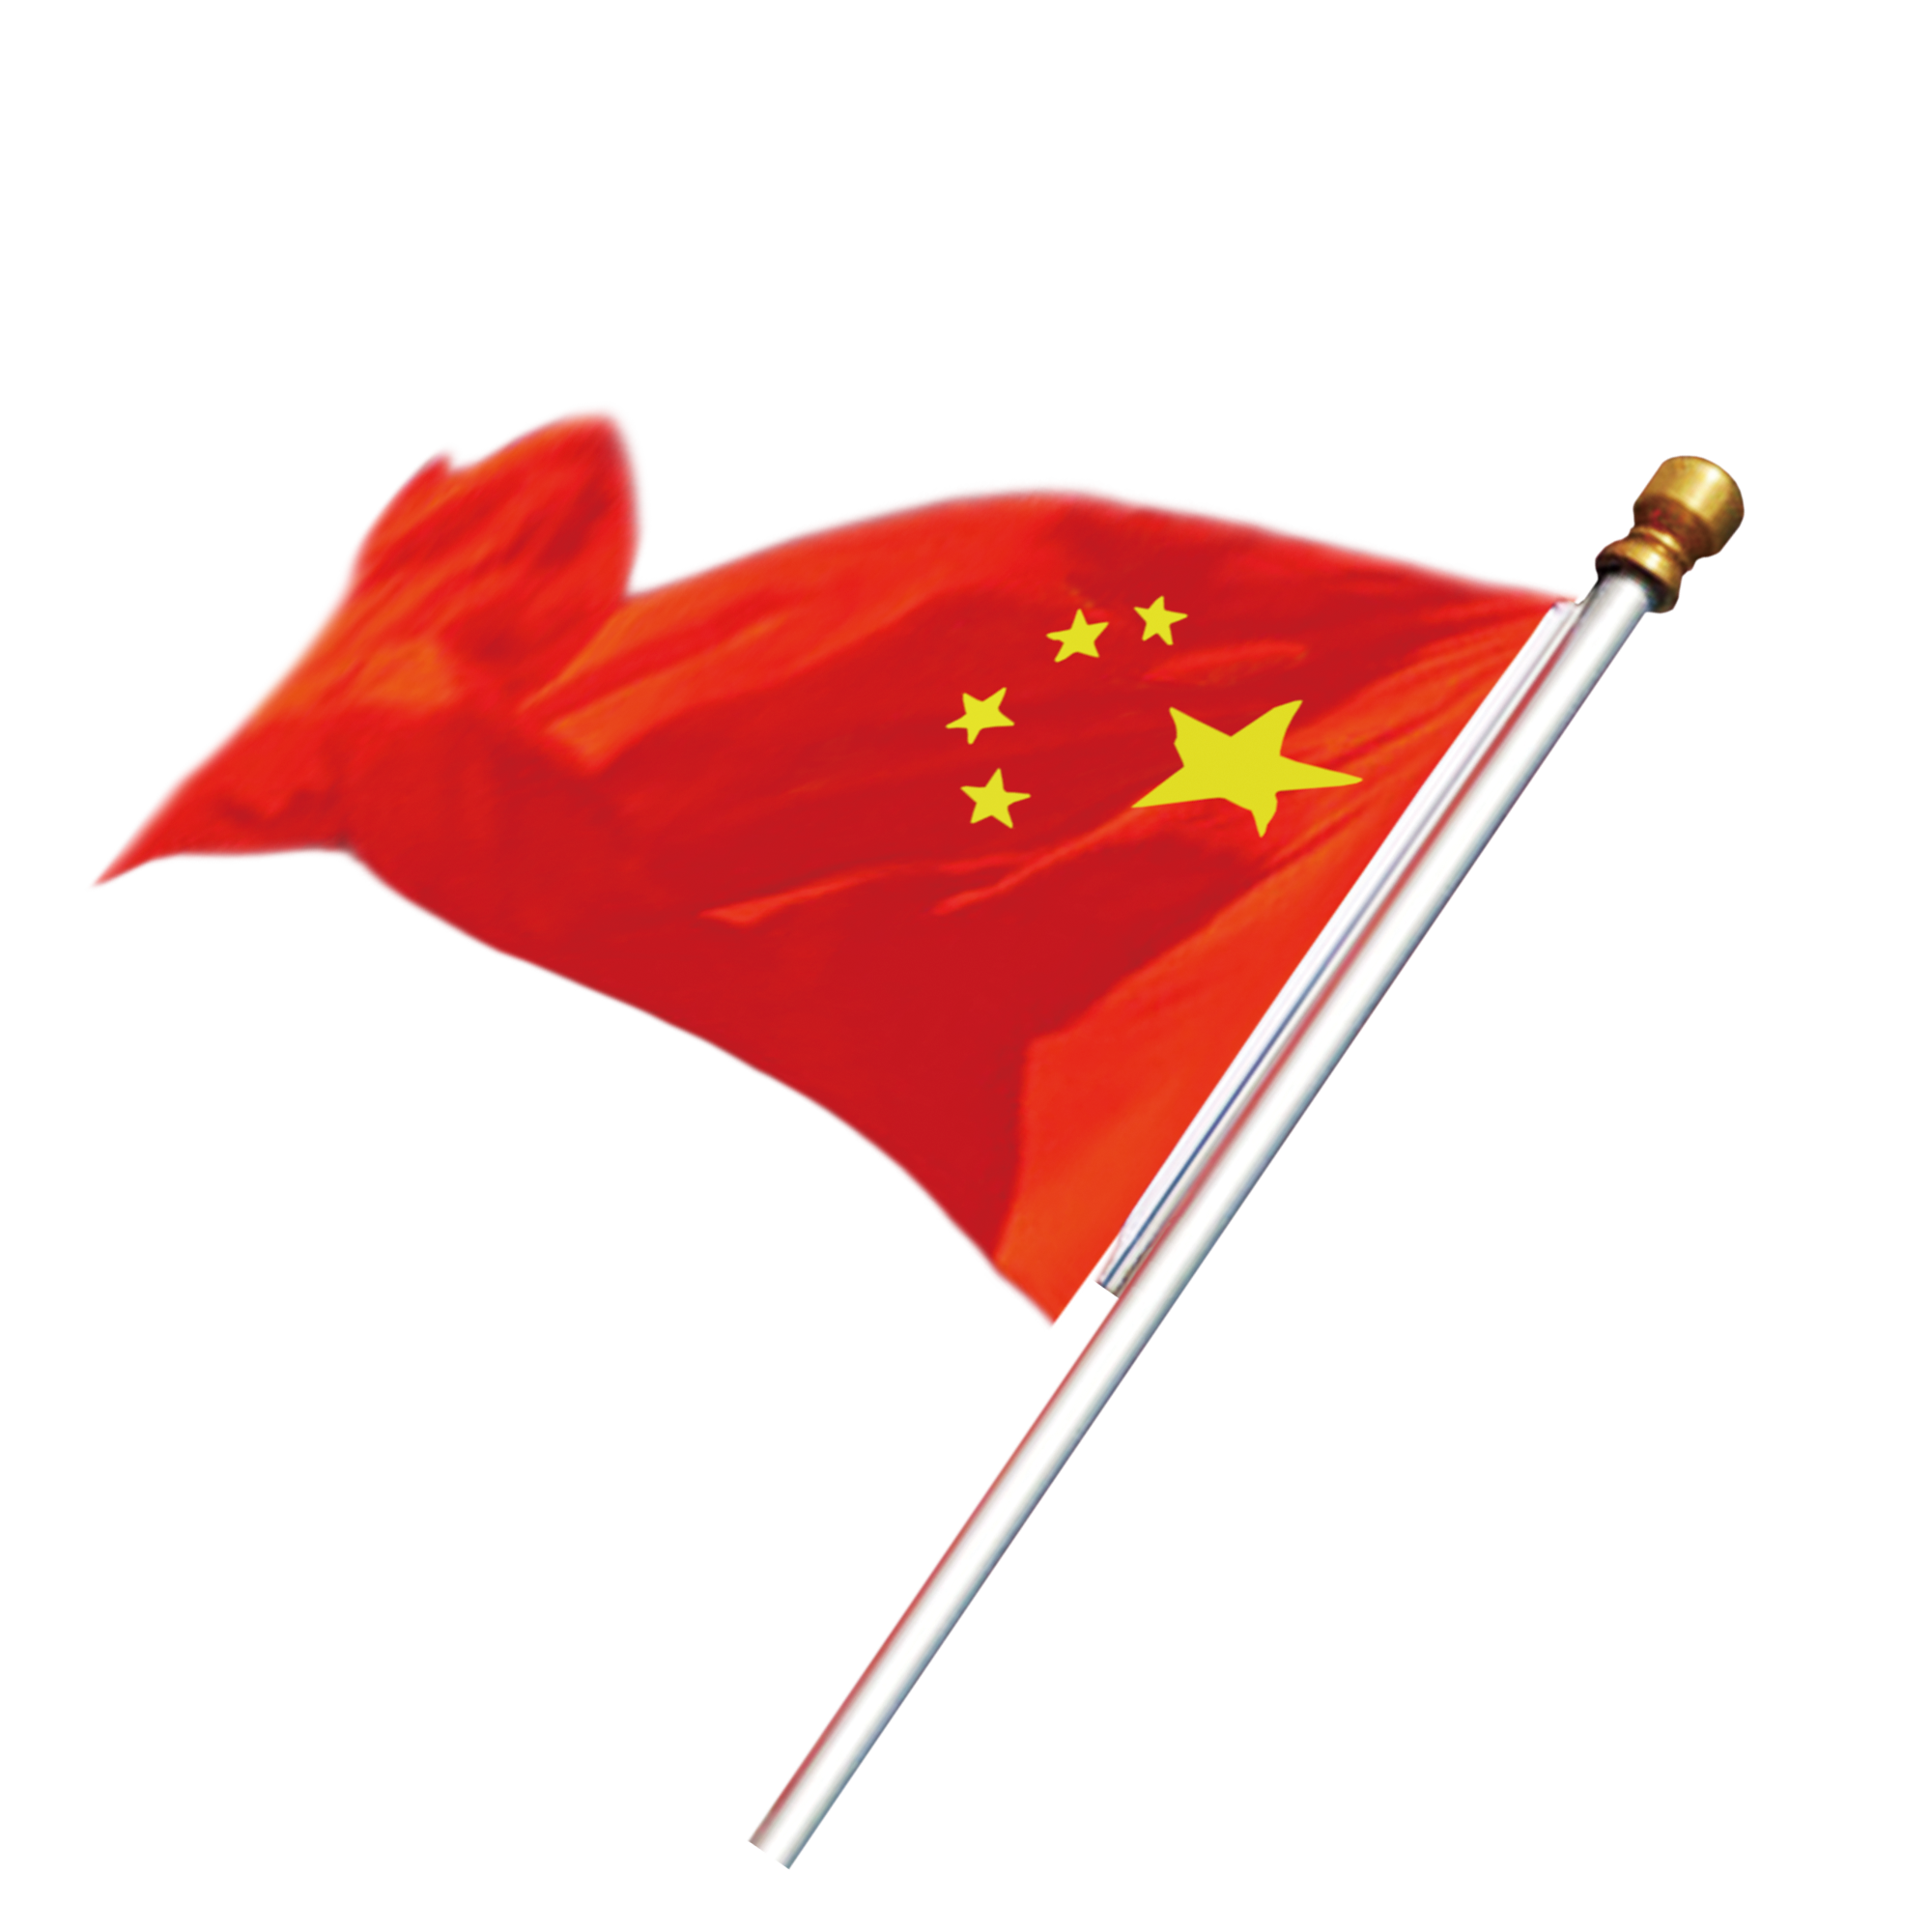 Agitando el fondo transparente de la bandera de China